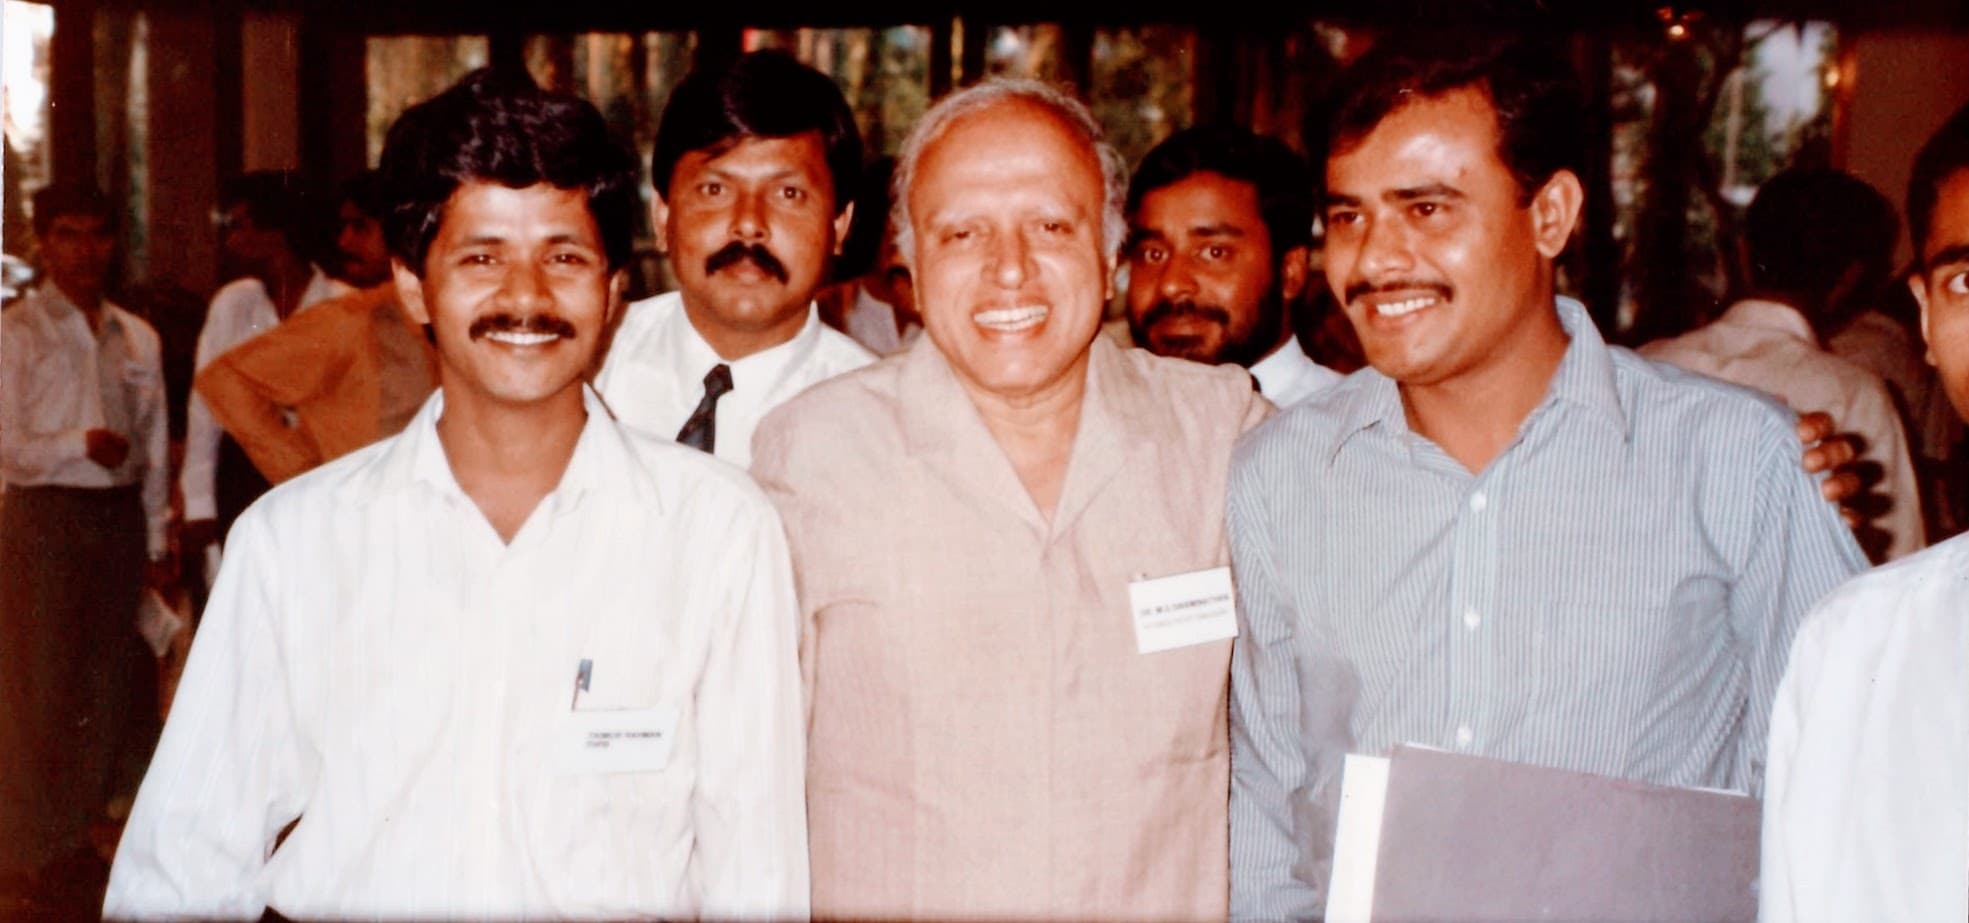 Dr. Swaminathan stands three men from Bangladesh at a meeting.